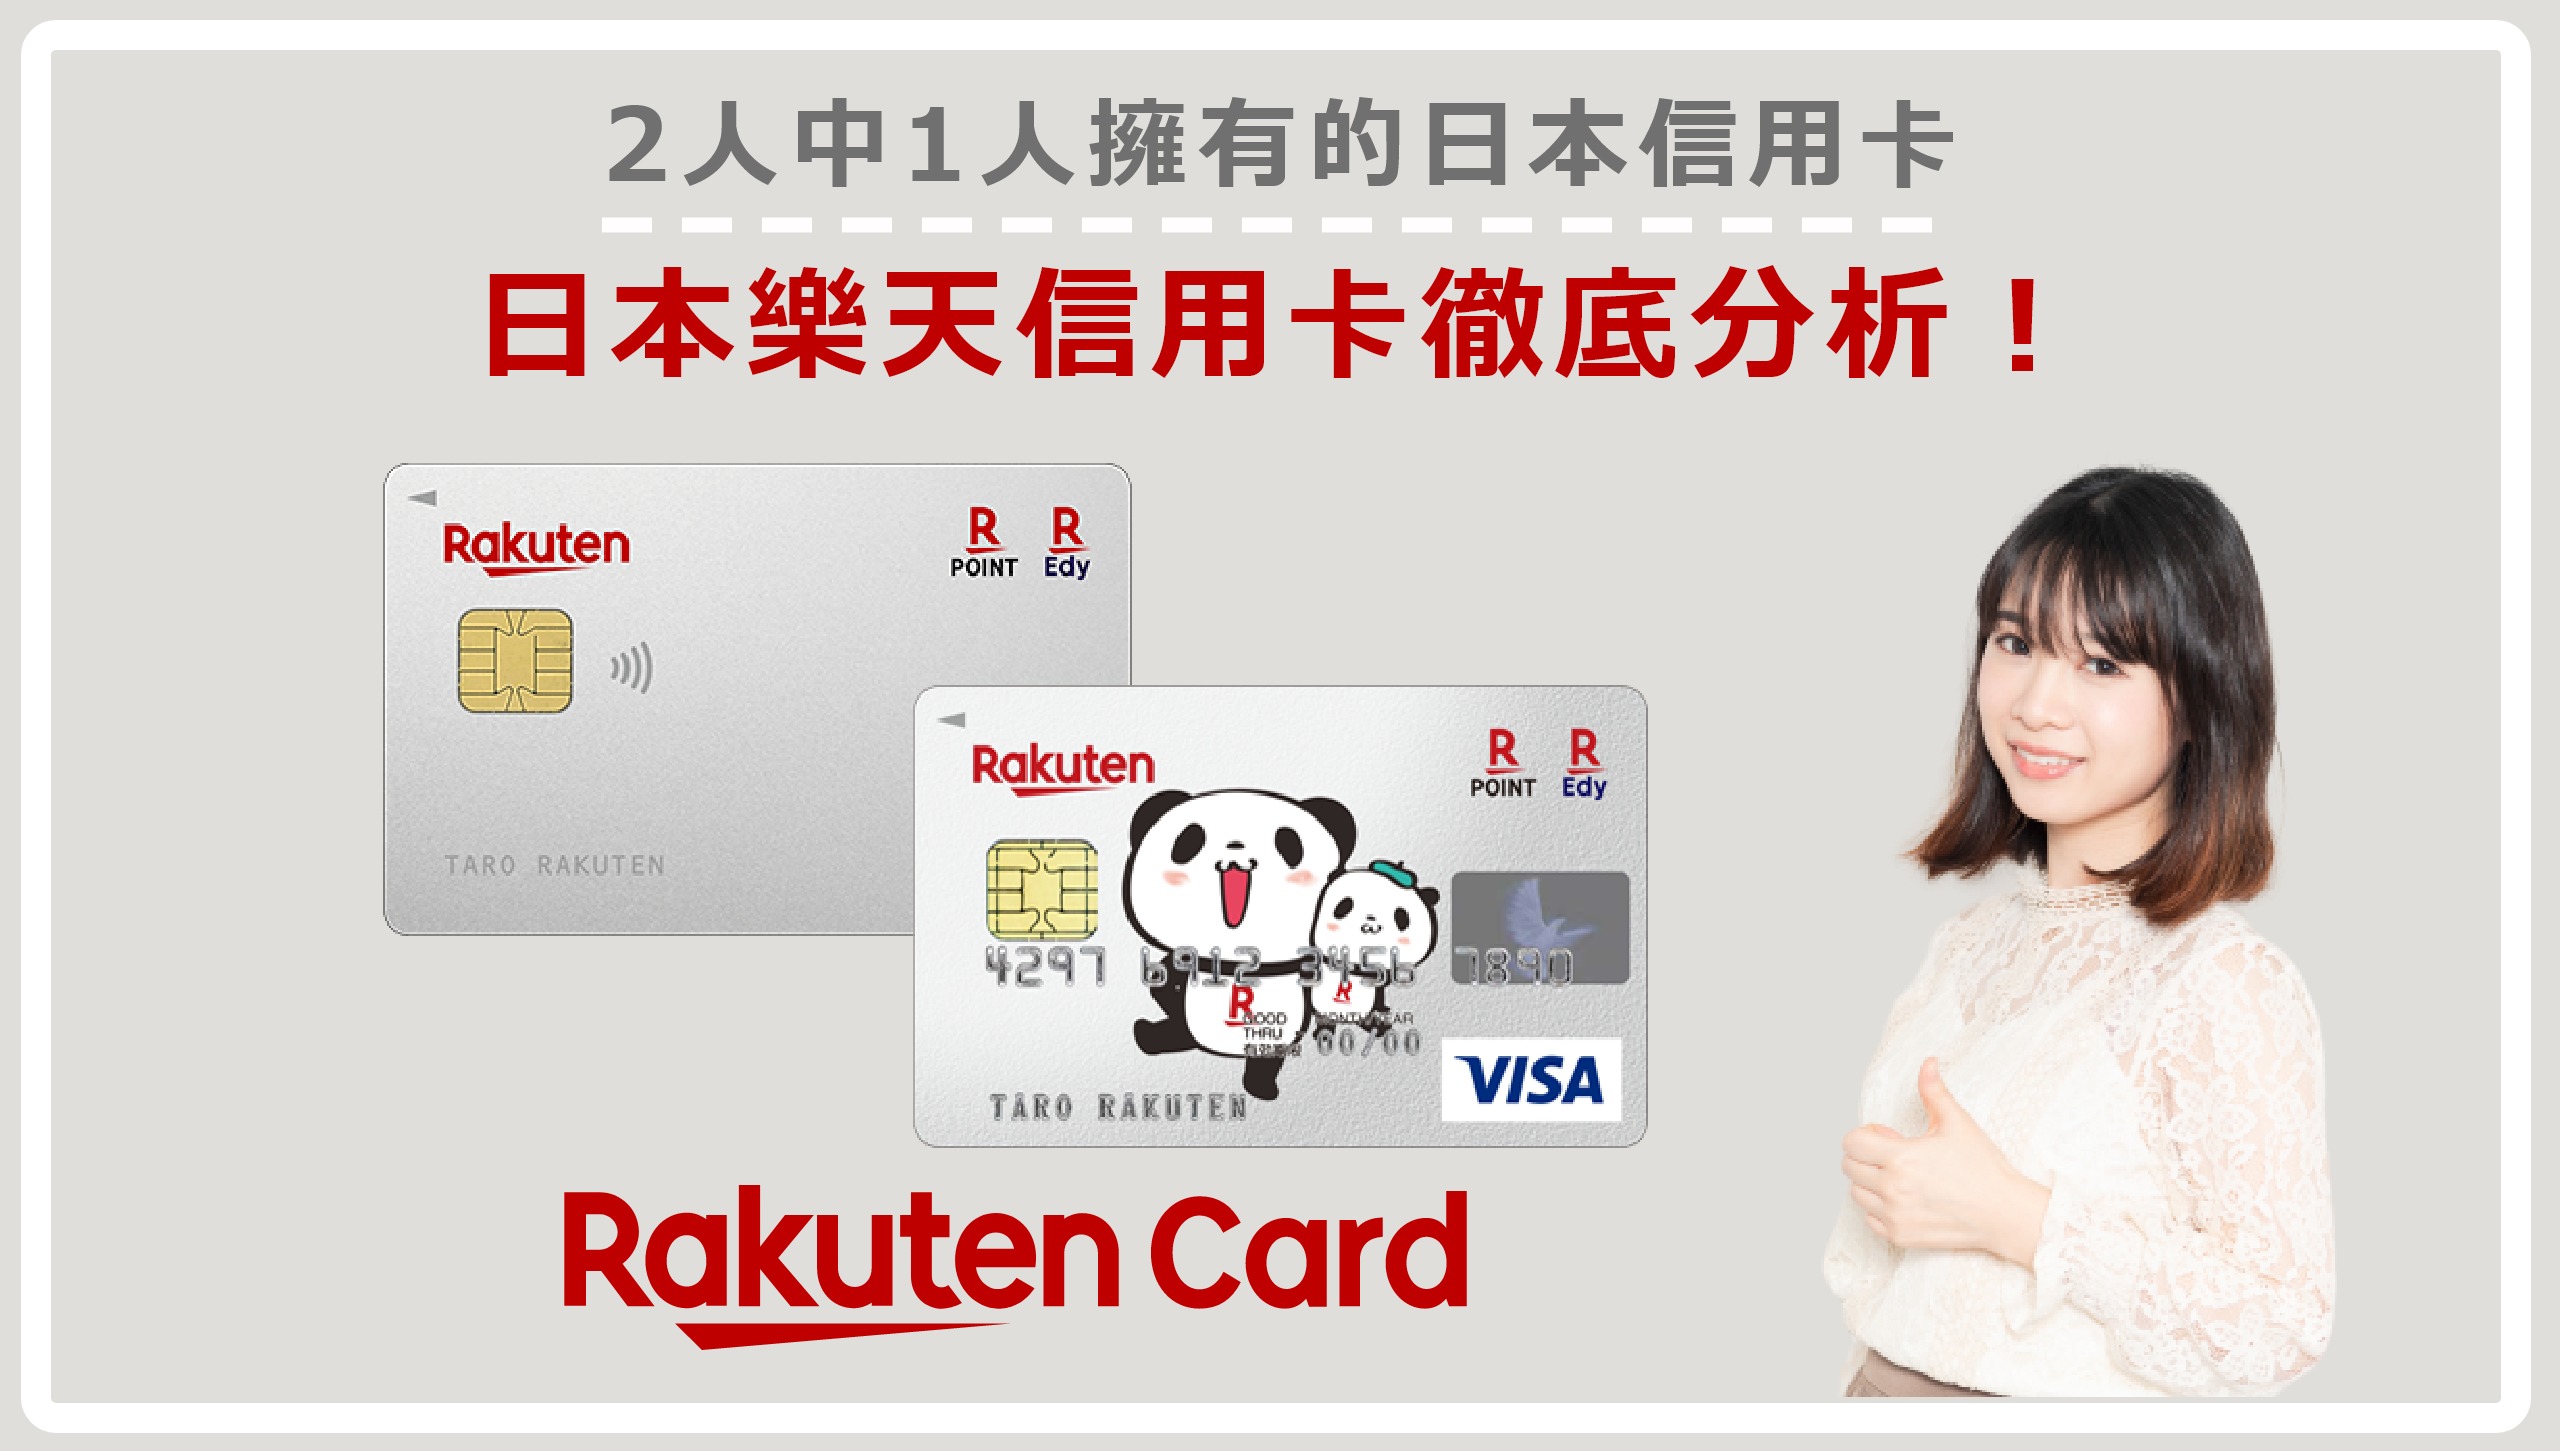 樂天信用卡 楽天カード 2人中1人擁有的日本信用卡 特徵 壞處和詳盡申請教學 Japan Life Media